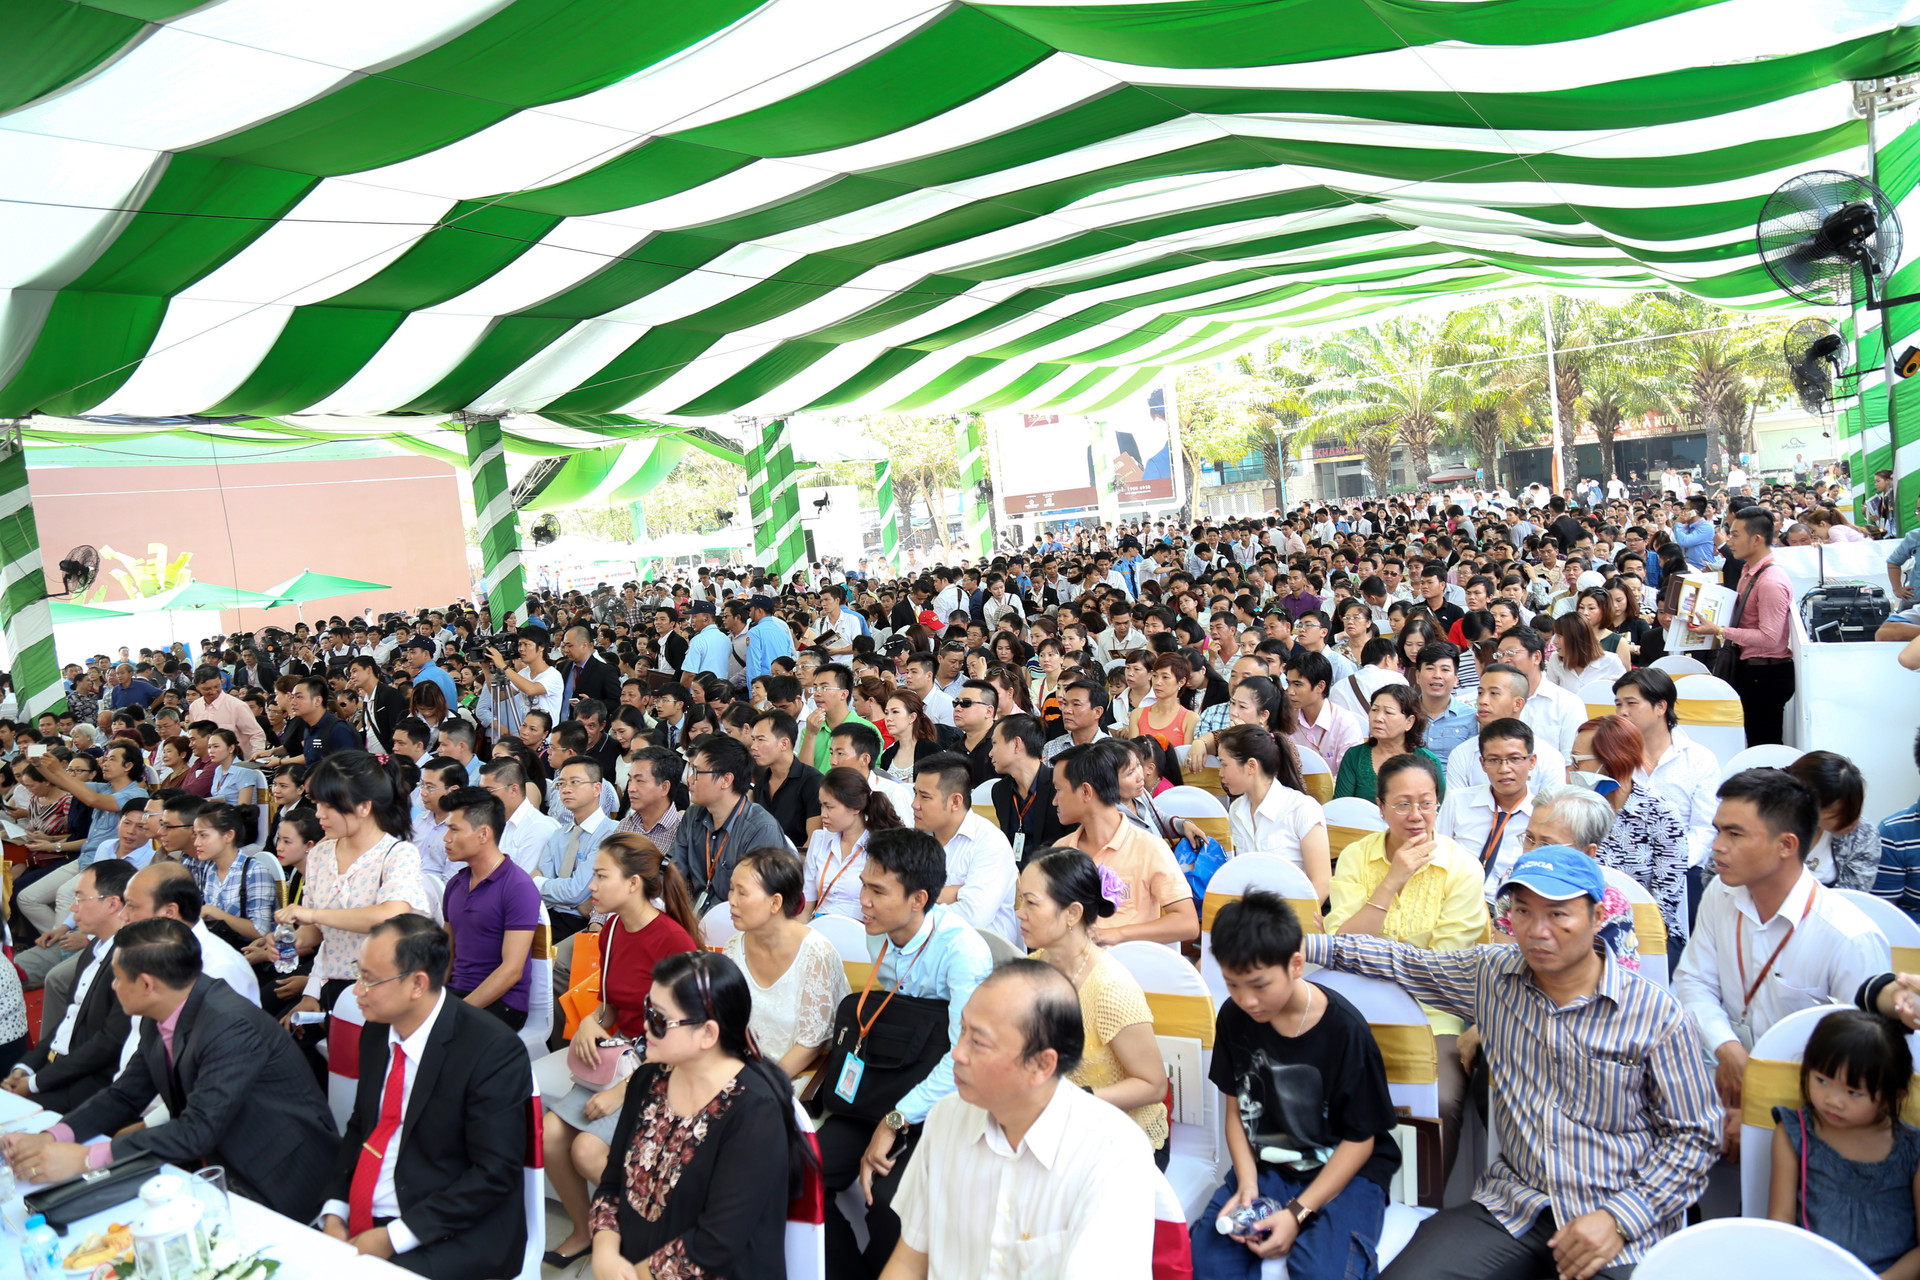 Hung Thinh Corp tổ chức Lễ Công bố và  khai trương căn hộ mẫu SaigonMia